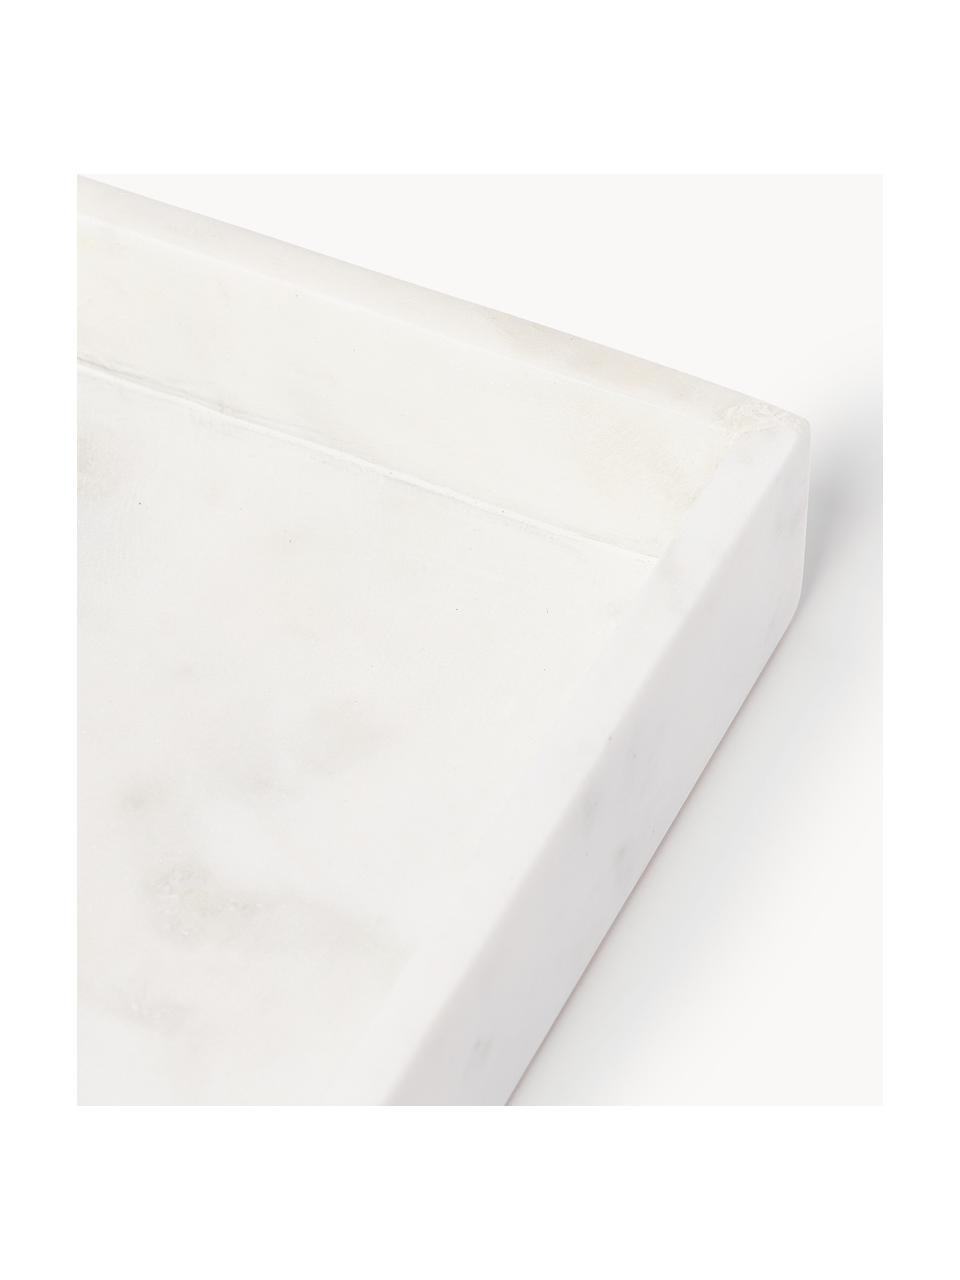 Vassoio da portata in marmo Colore bianco - RESERVED - 8635T-00X